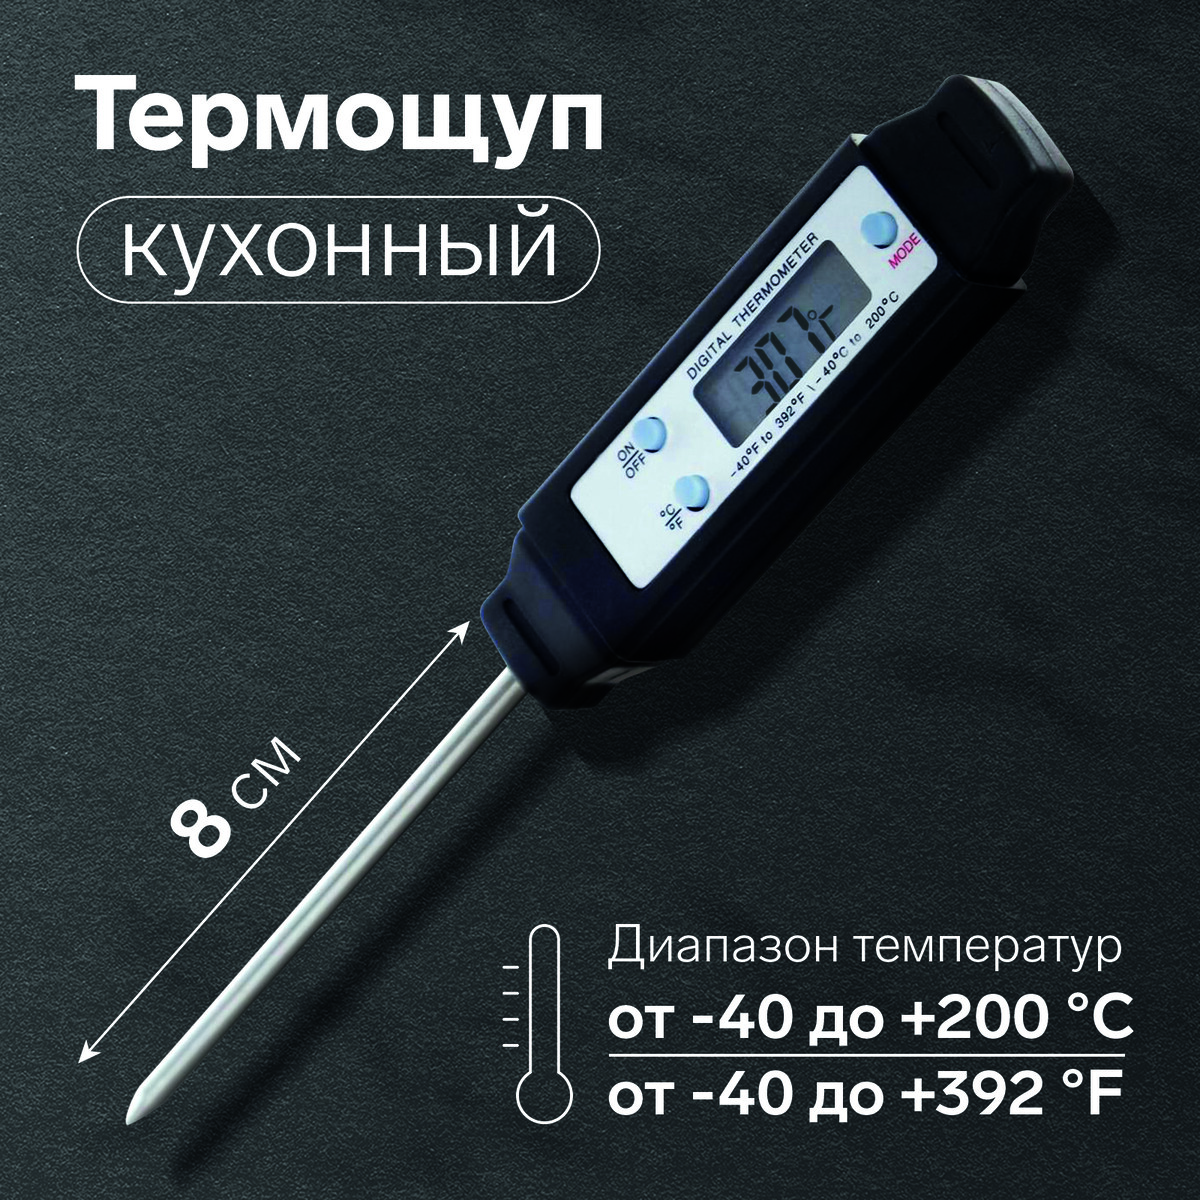 Термощуп кухонный ltp-001, максимальная температура 200 °c, от батареек lr44, черный термощуп кухонный ltr 08 макс темп 300 °c складной от ааа не в комплекте